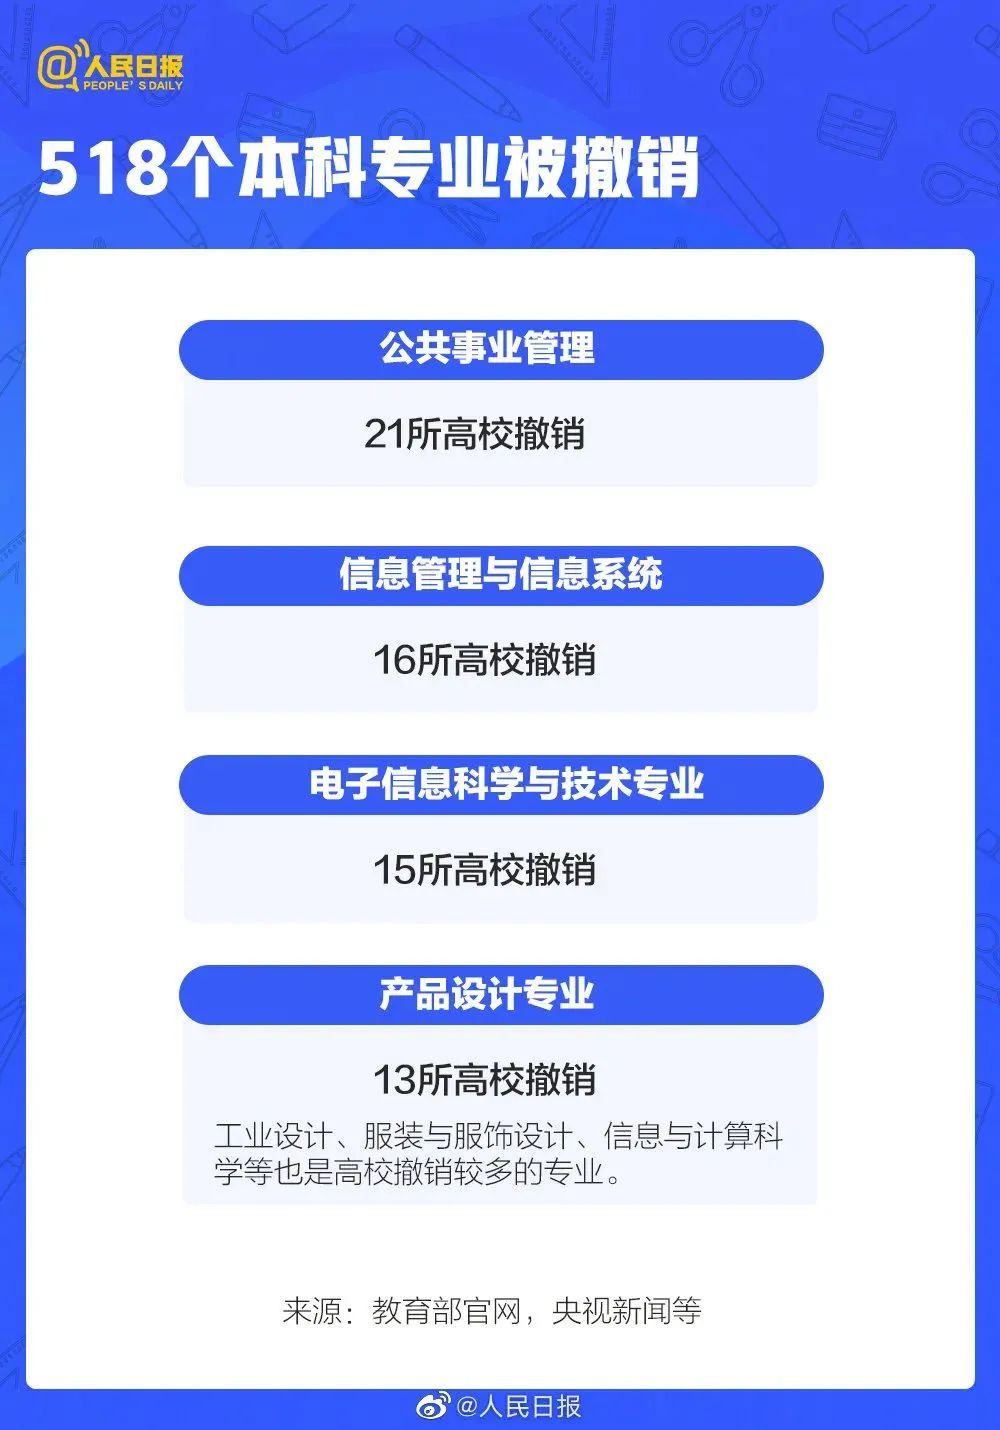 2、北京高中毕业证查询系统：如何在线查询您的高中毕业证编号和学籍